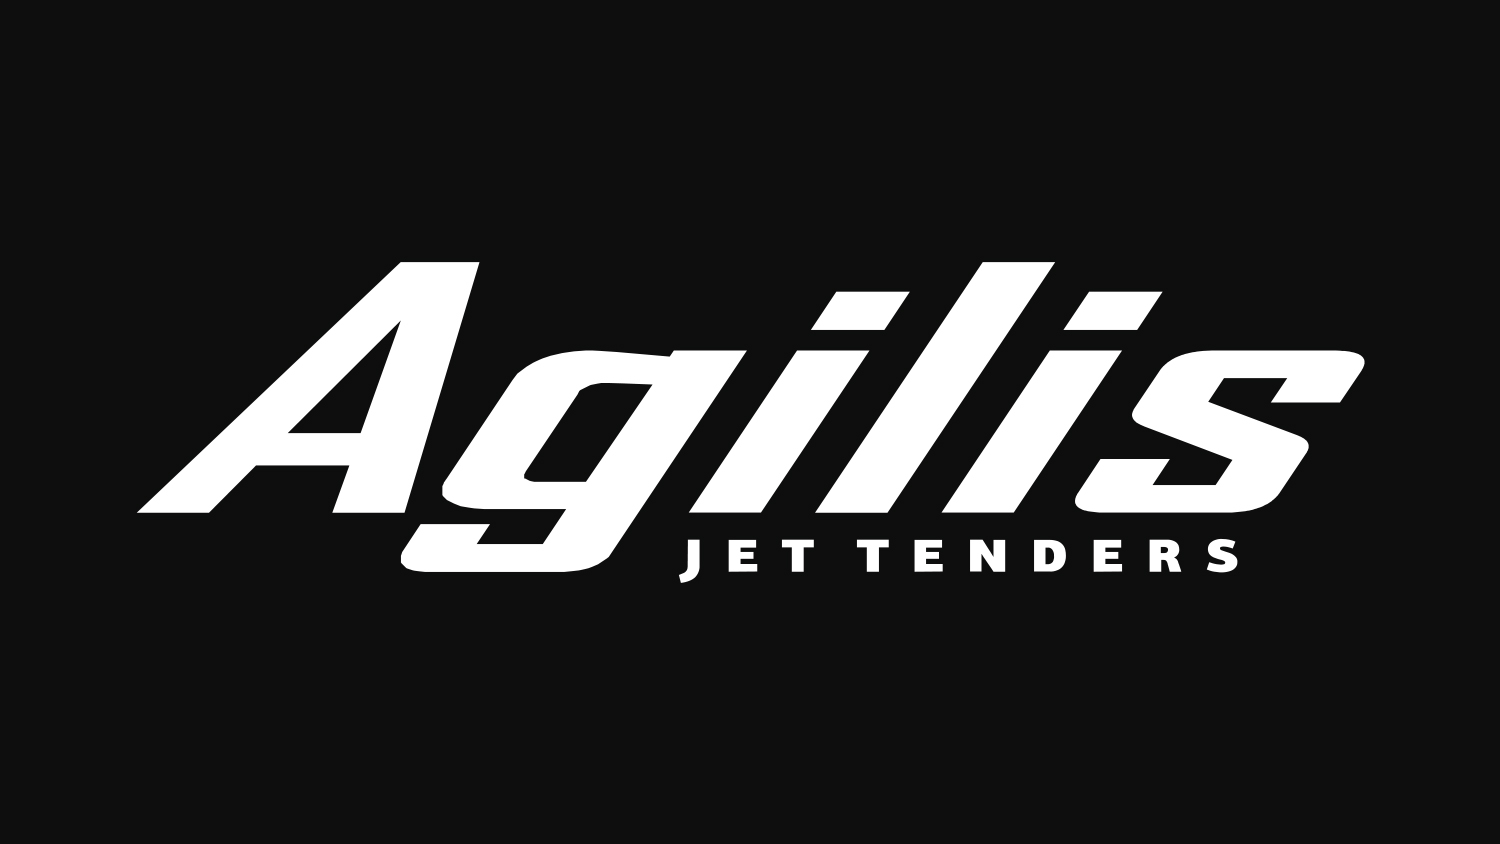 Storia dell’azienda Agilis Jettenders